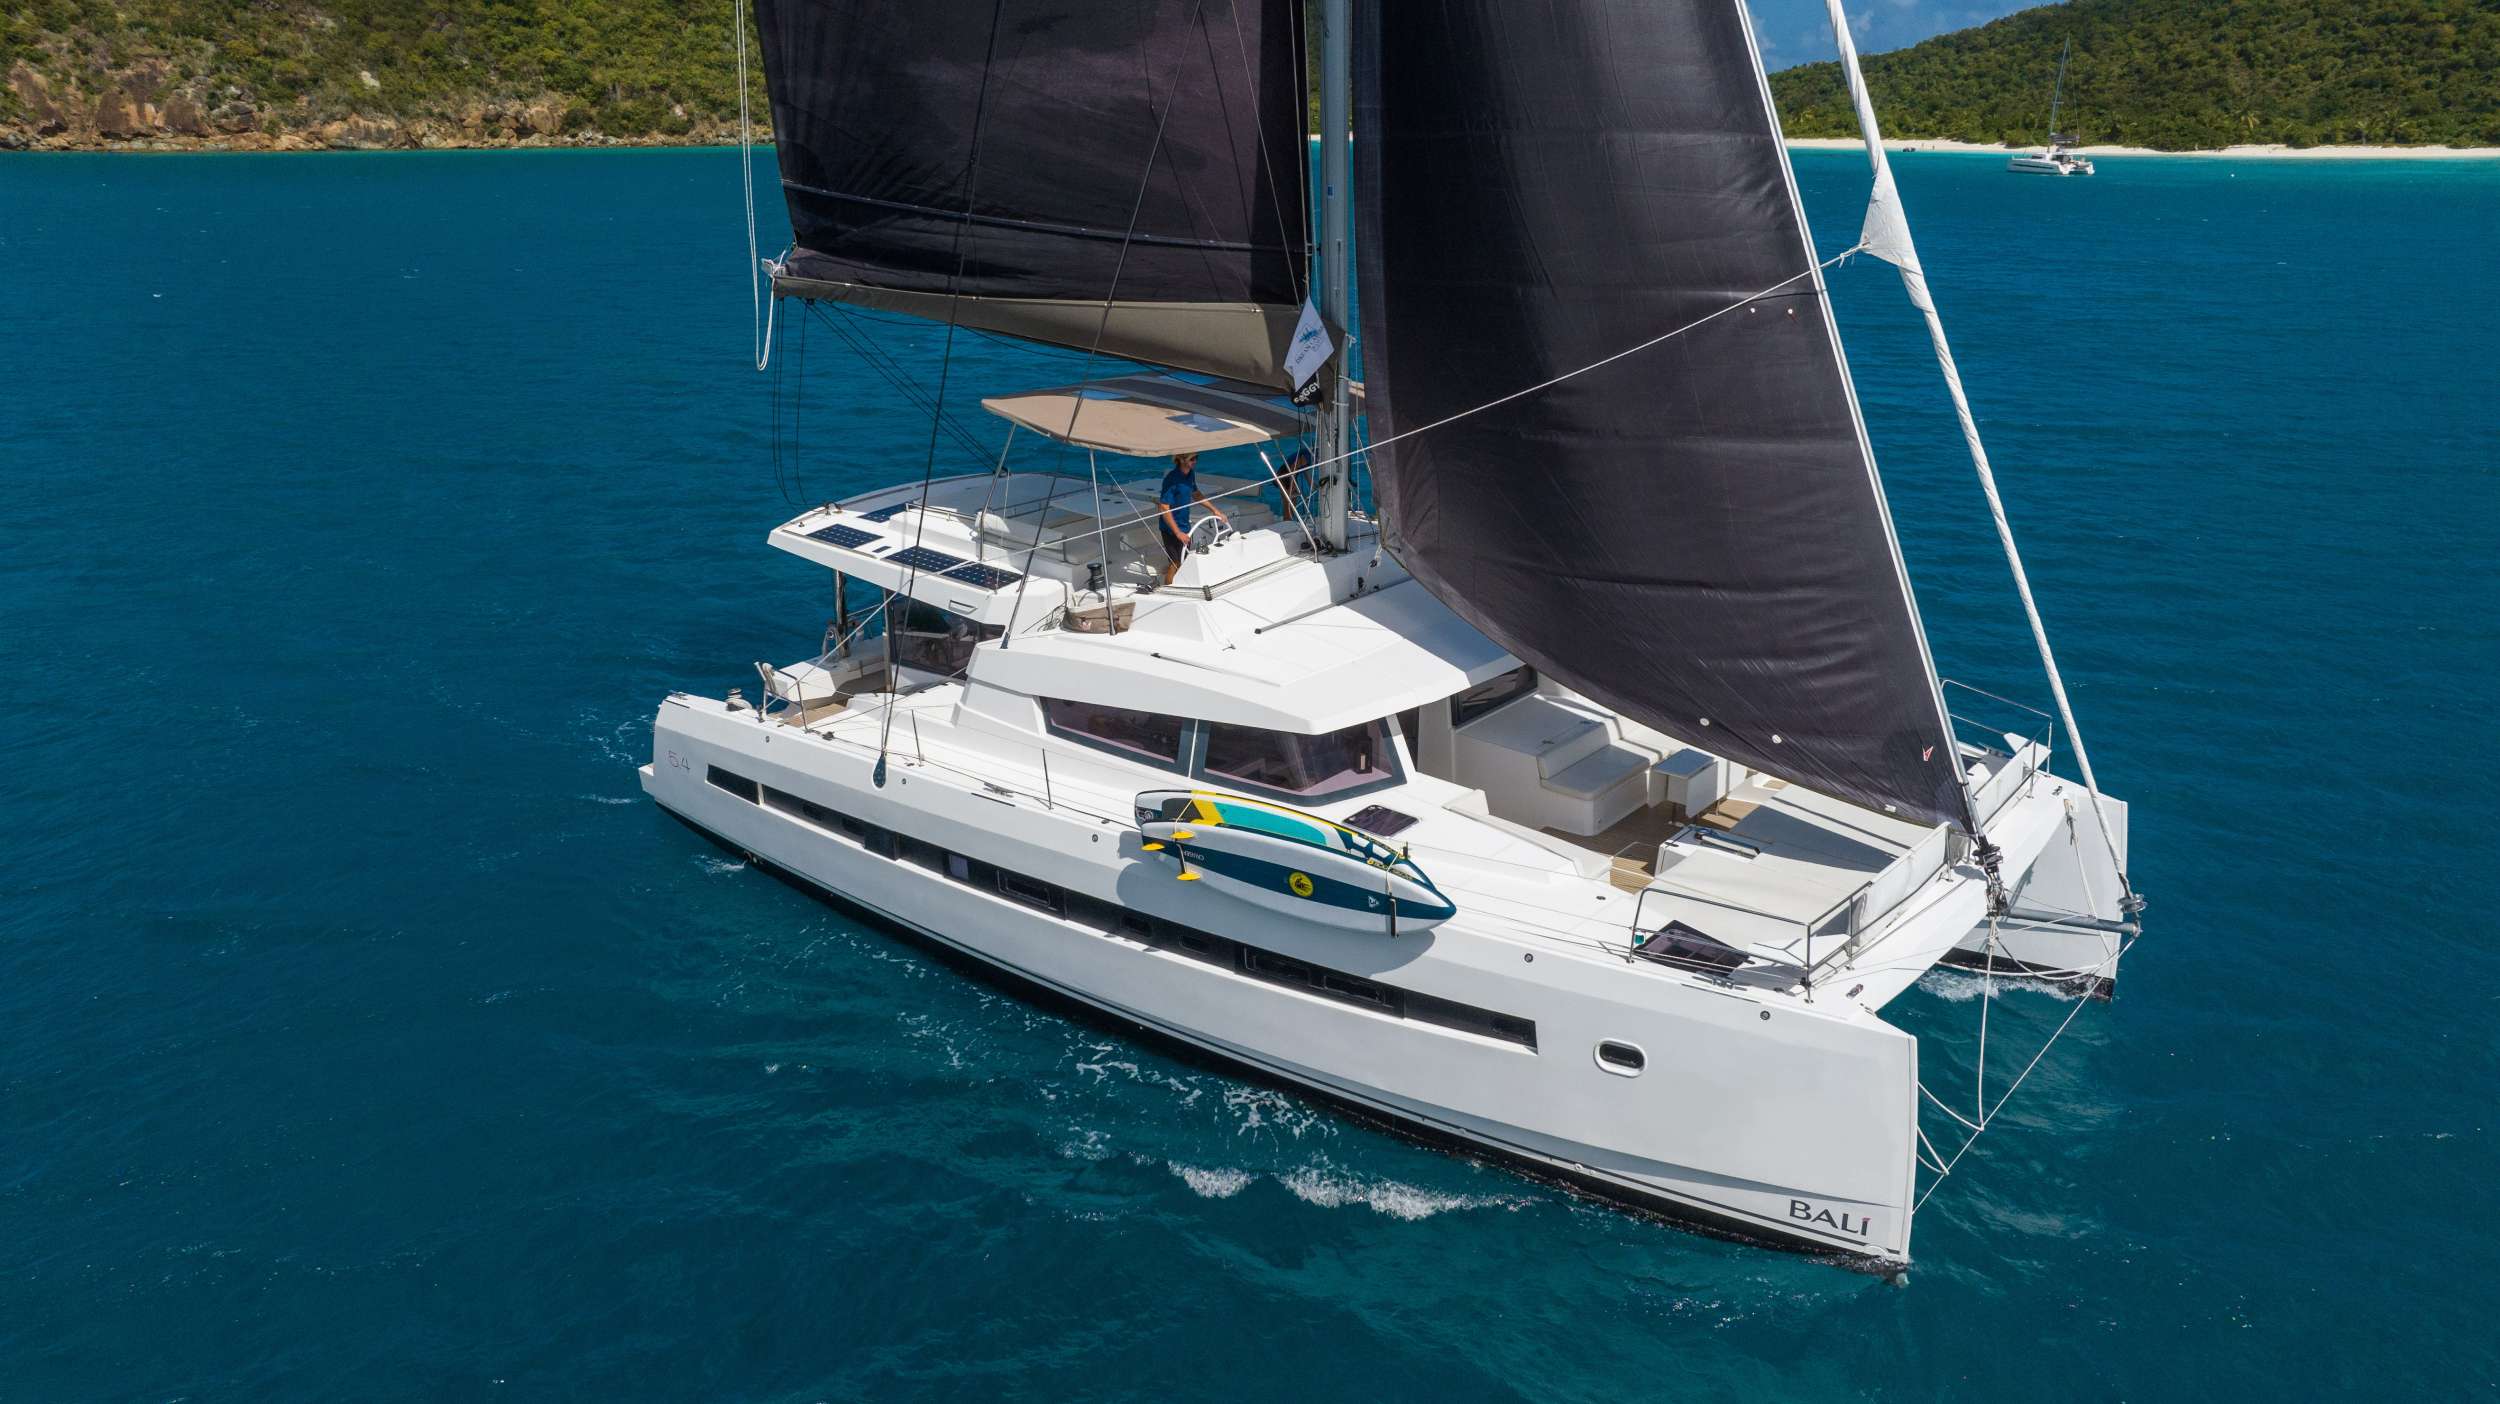 SUN DAZE 5.4 - Yacht Charter Panama & Boat hire in Caribbean 1